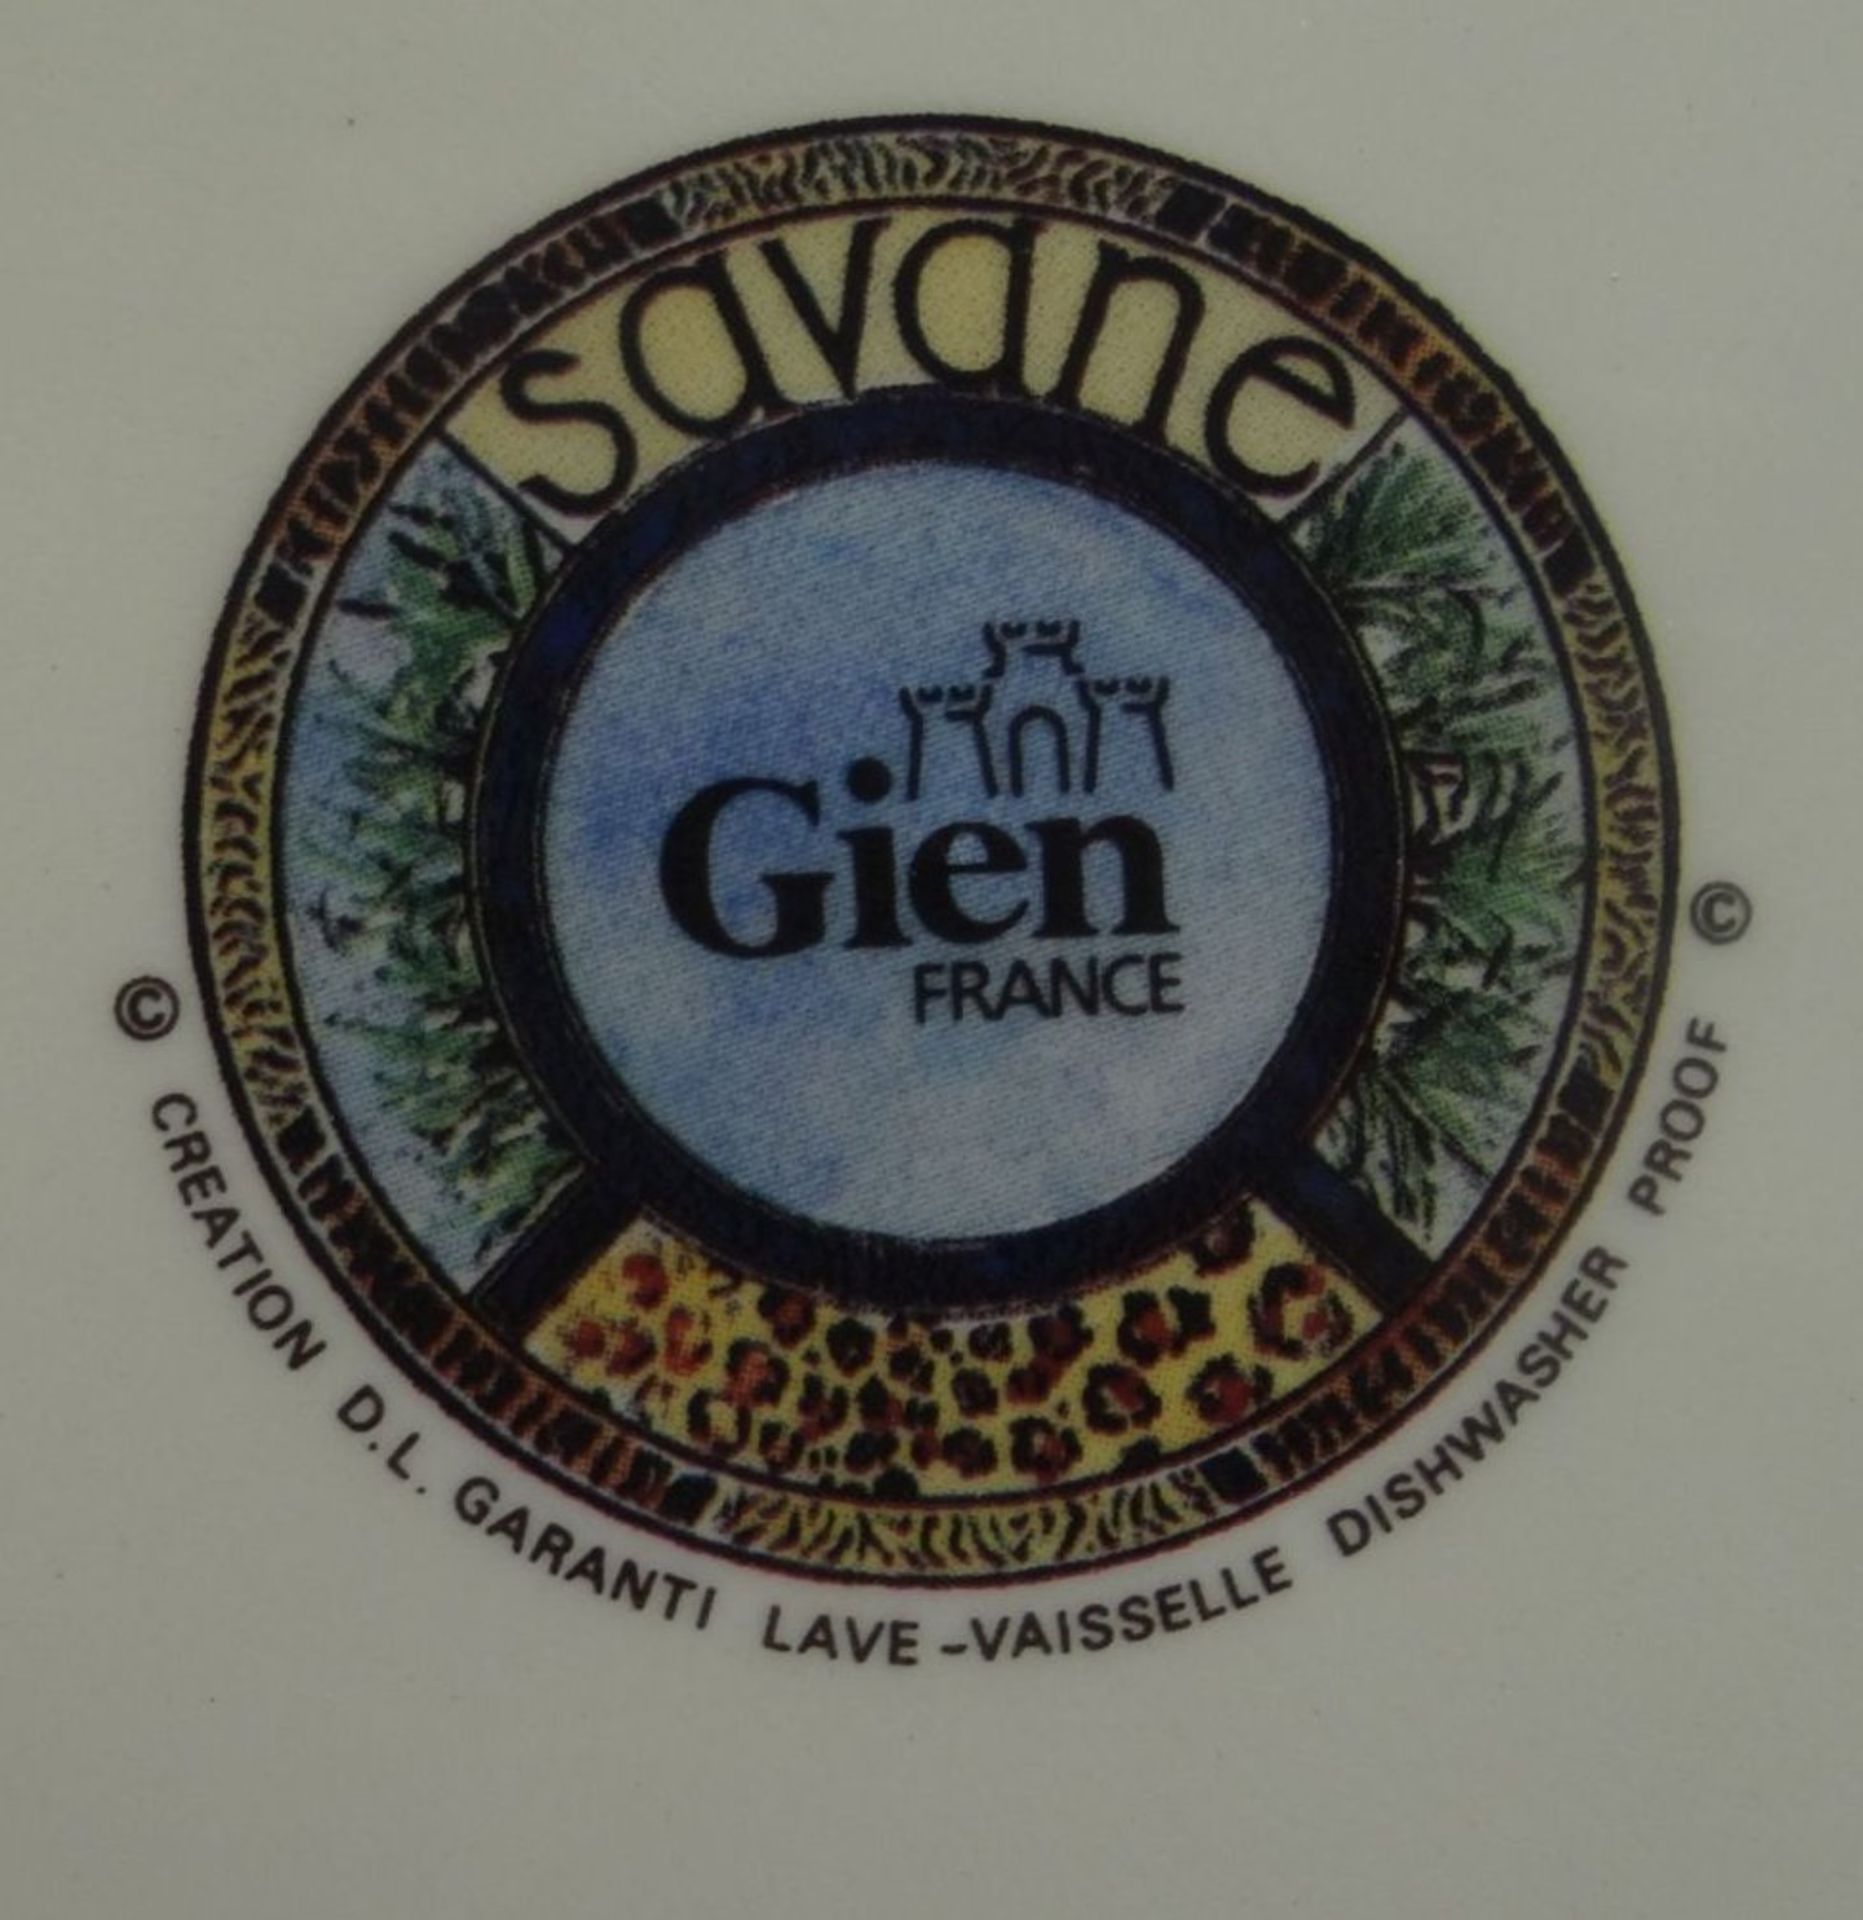 6 Desterteller "Gien" France, Savane, in OVP, D-22 cm - Bild 4 aus 4